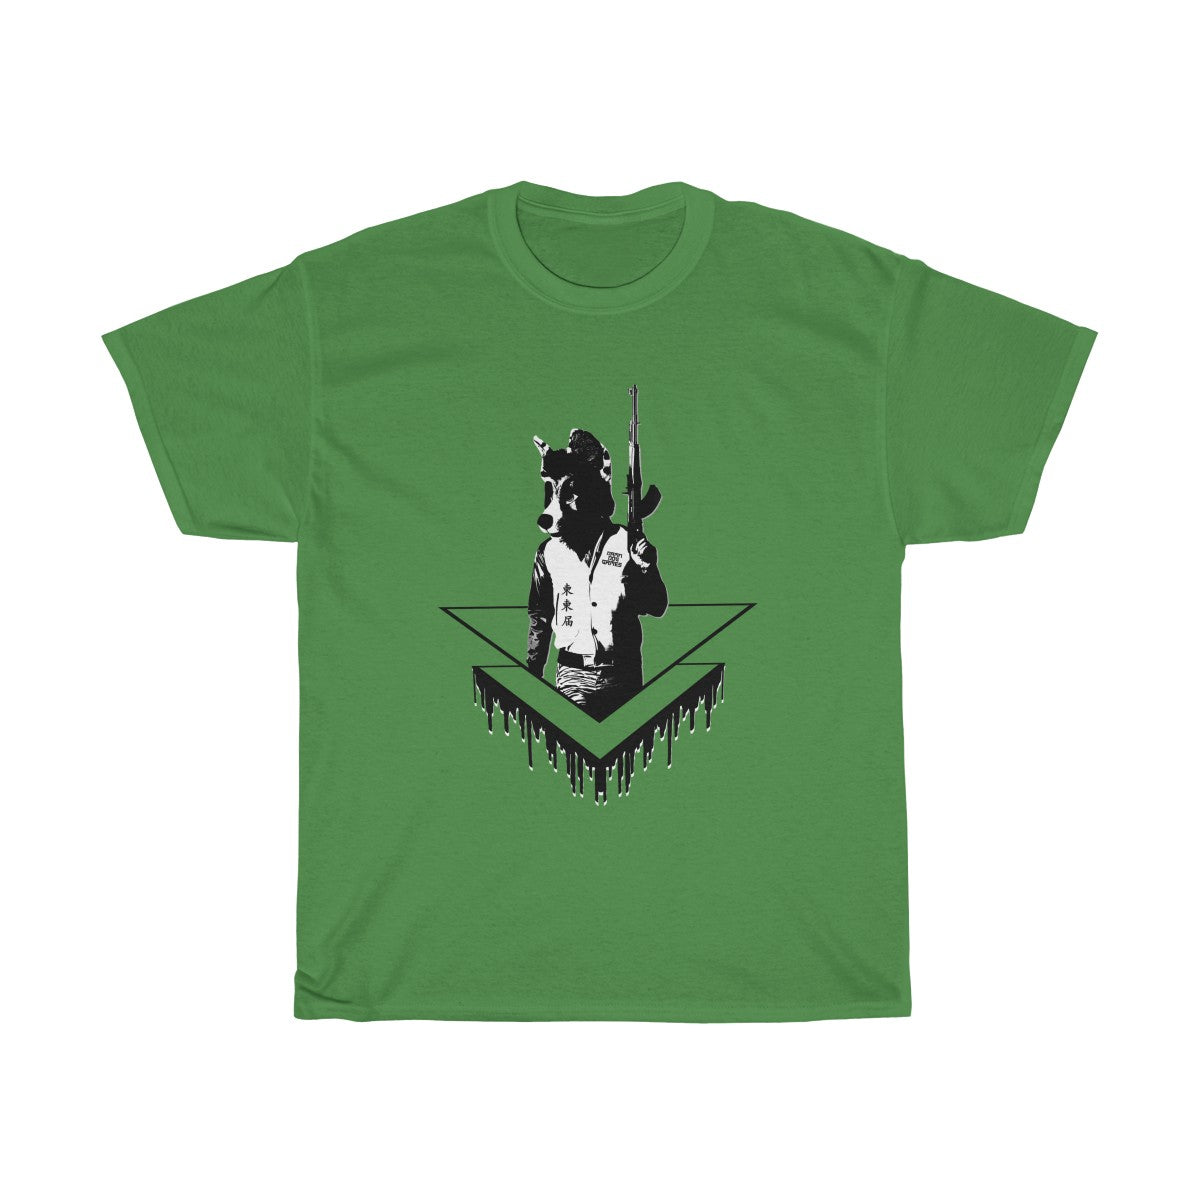 Battle Coyote - T-Shirt T-Shirt Corey Coyote Green S 